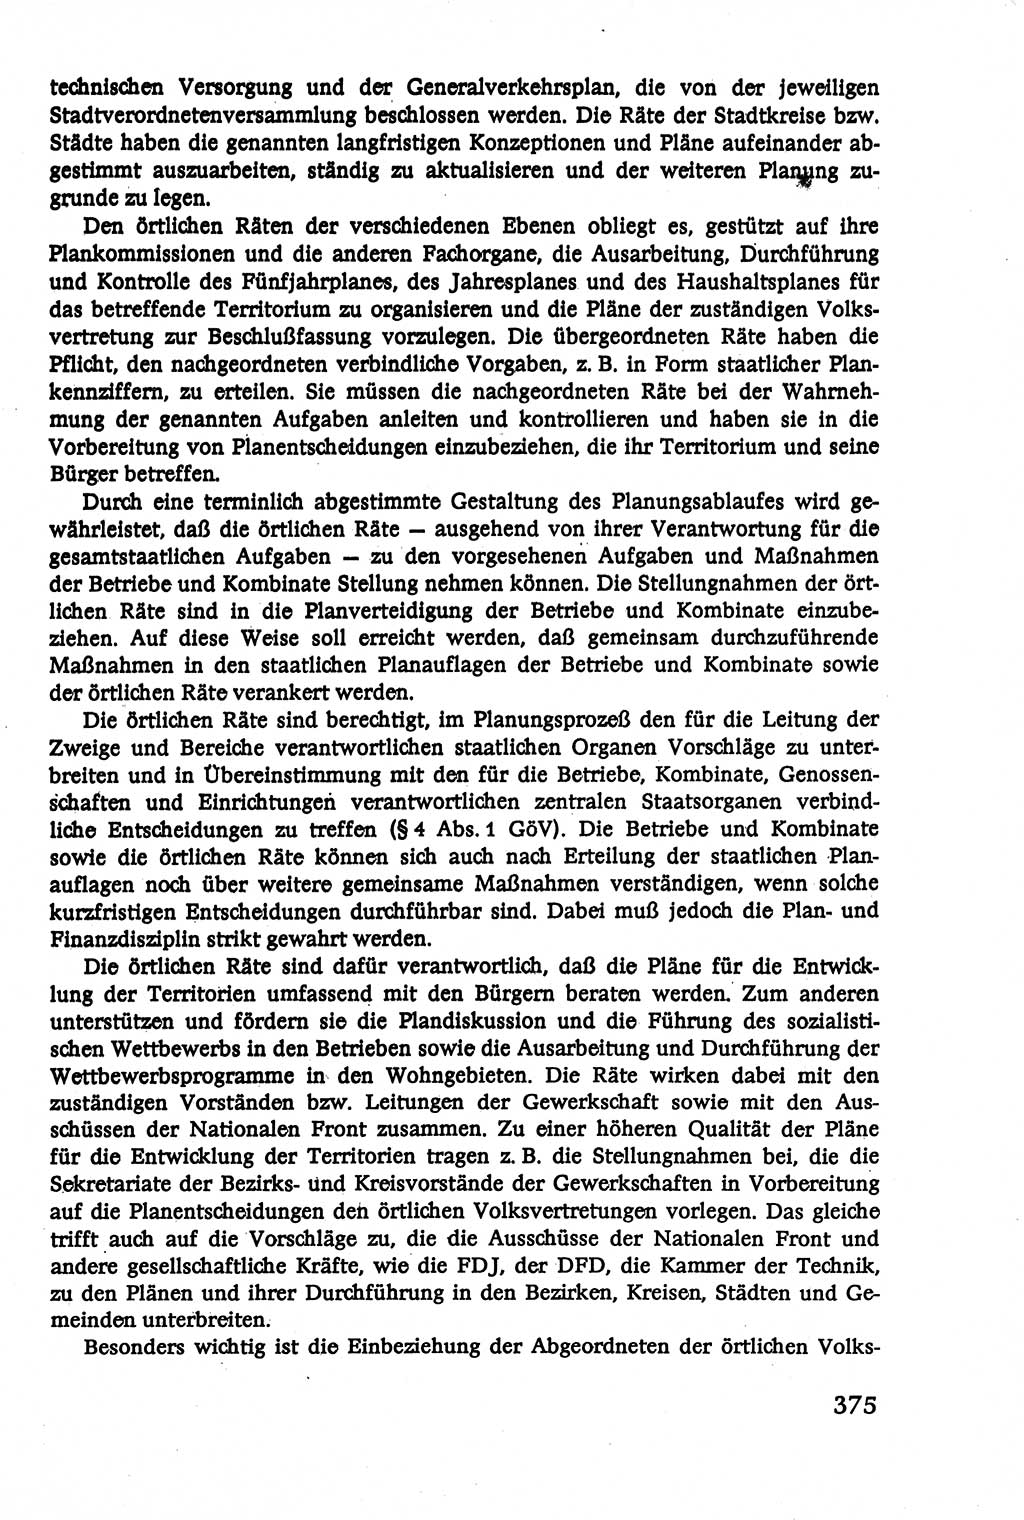 Verwaltungsrecht [Deutsche Demokratische Republik (DDR)], Lehrbuch 1979, Seite 375 (Verw.-R. DDR Lb. 1979, S. 375)